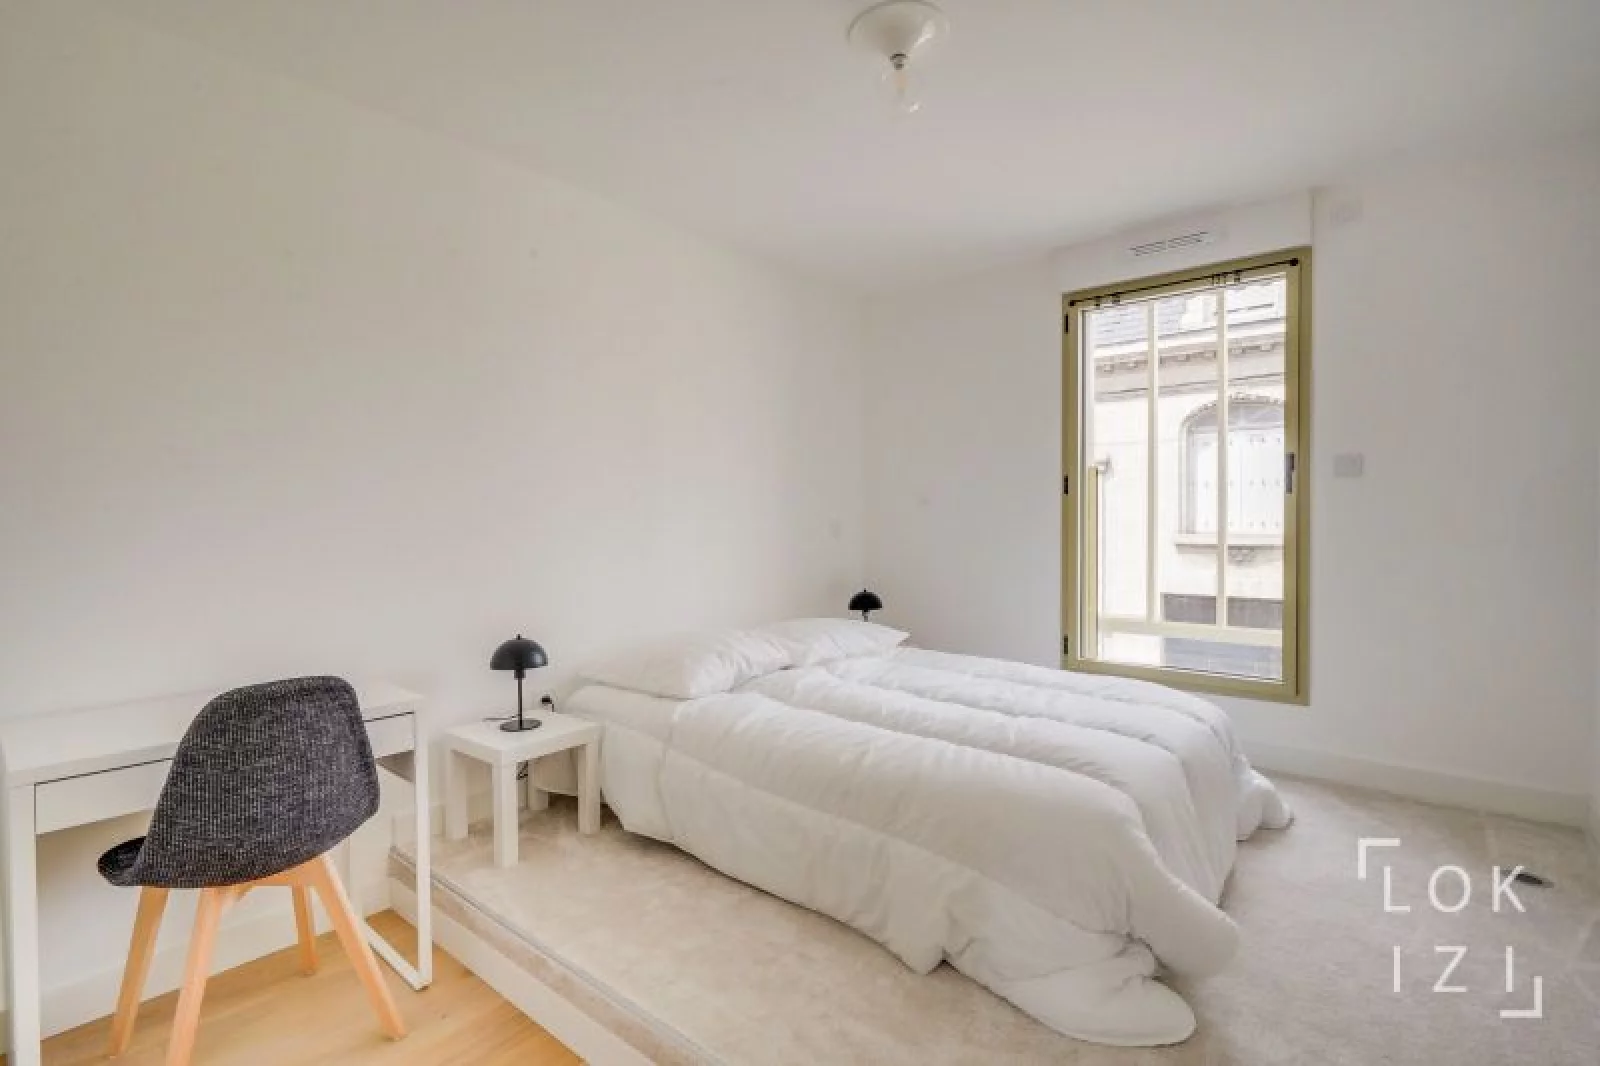 Location appartement meublé 4 pièces 90m² (Bordeaux - Caudéran)